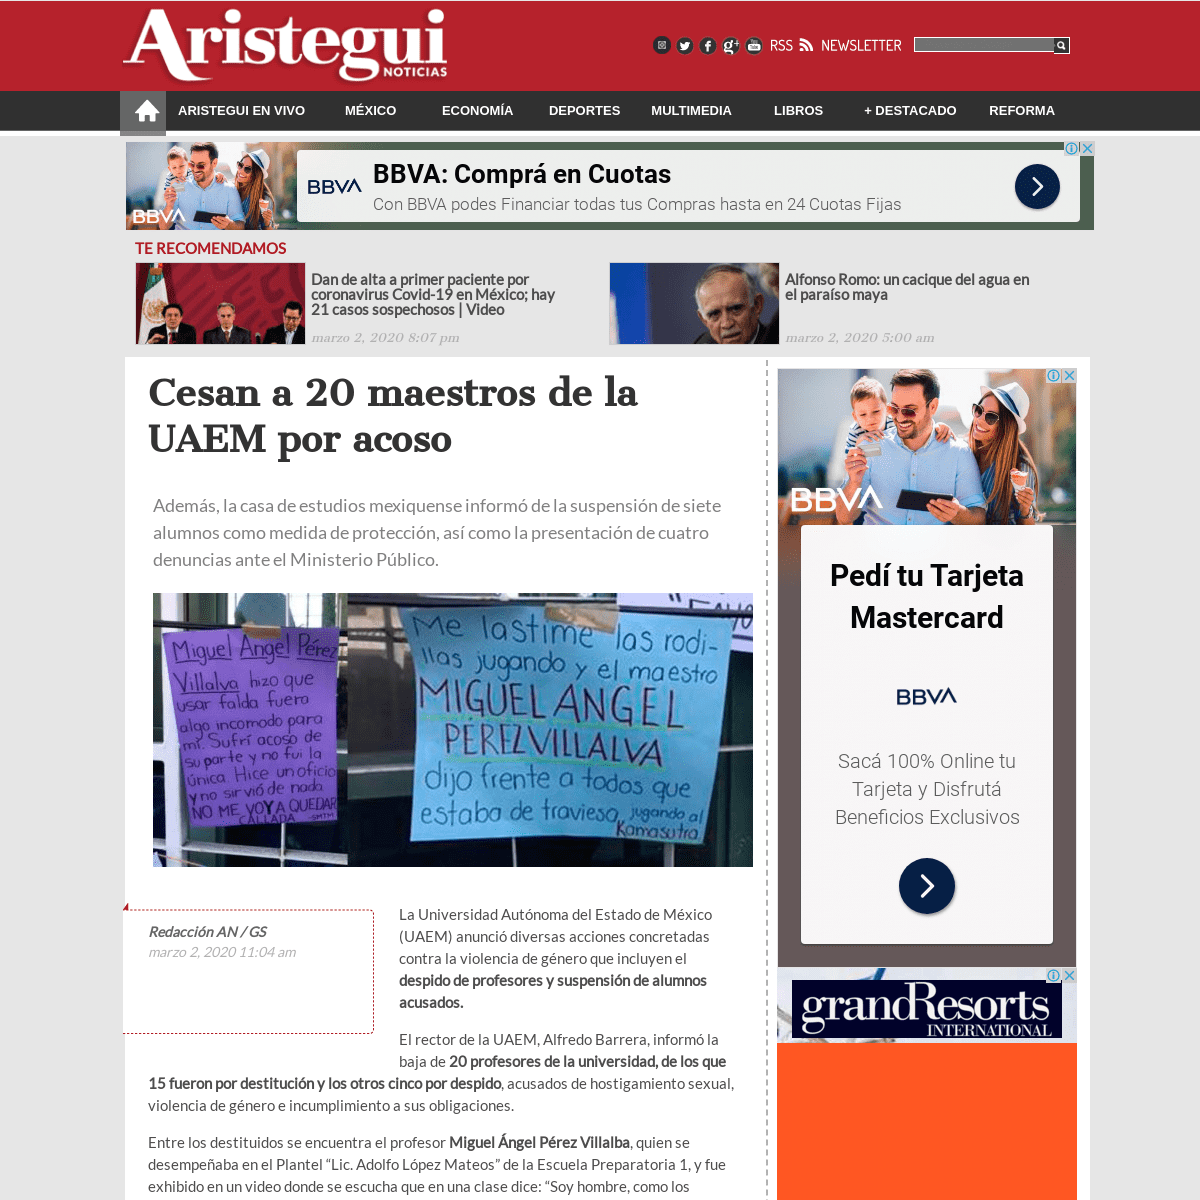 A complete backup of aristeguinoticias.com/0203/mexico/cesan-a-20-maestros-de-la-uaem-por-acoso/